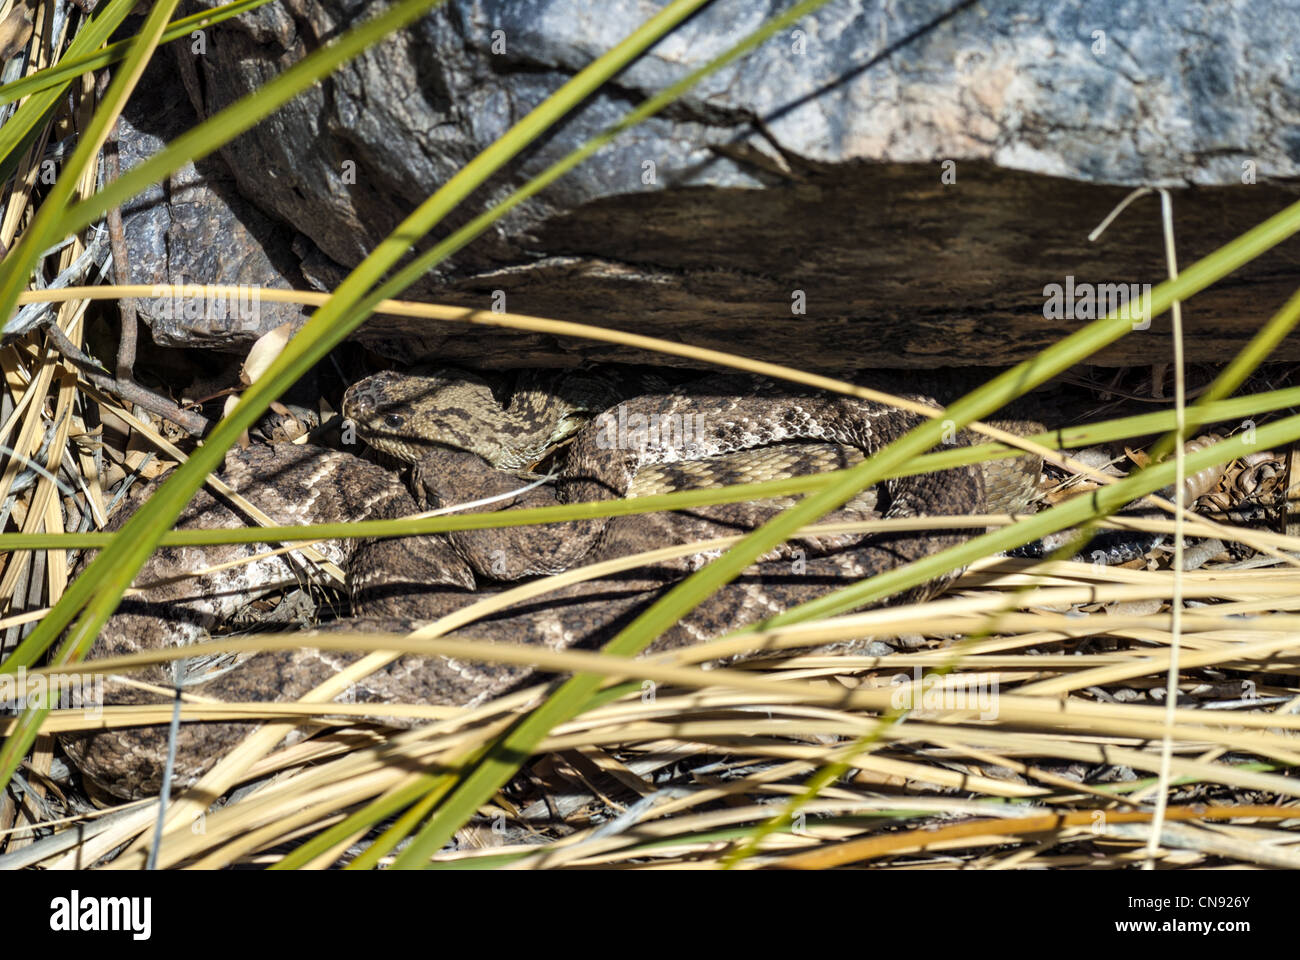 Western Diamond respaldados y Norte de serpientes de cascabel serpiente de cascabel de cola negra (Crotalus molossus molossus) tendido en una cueva. Foto de stock